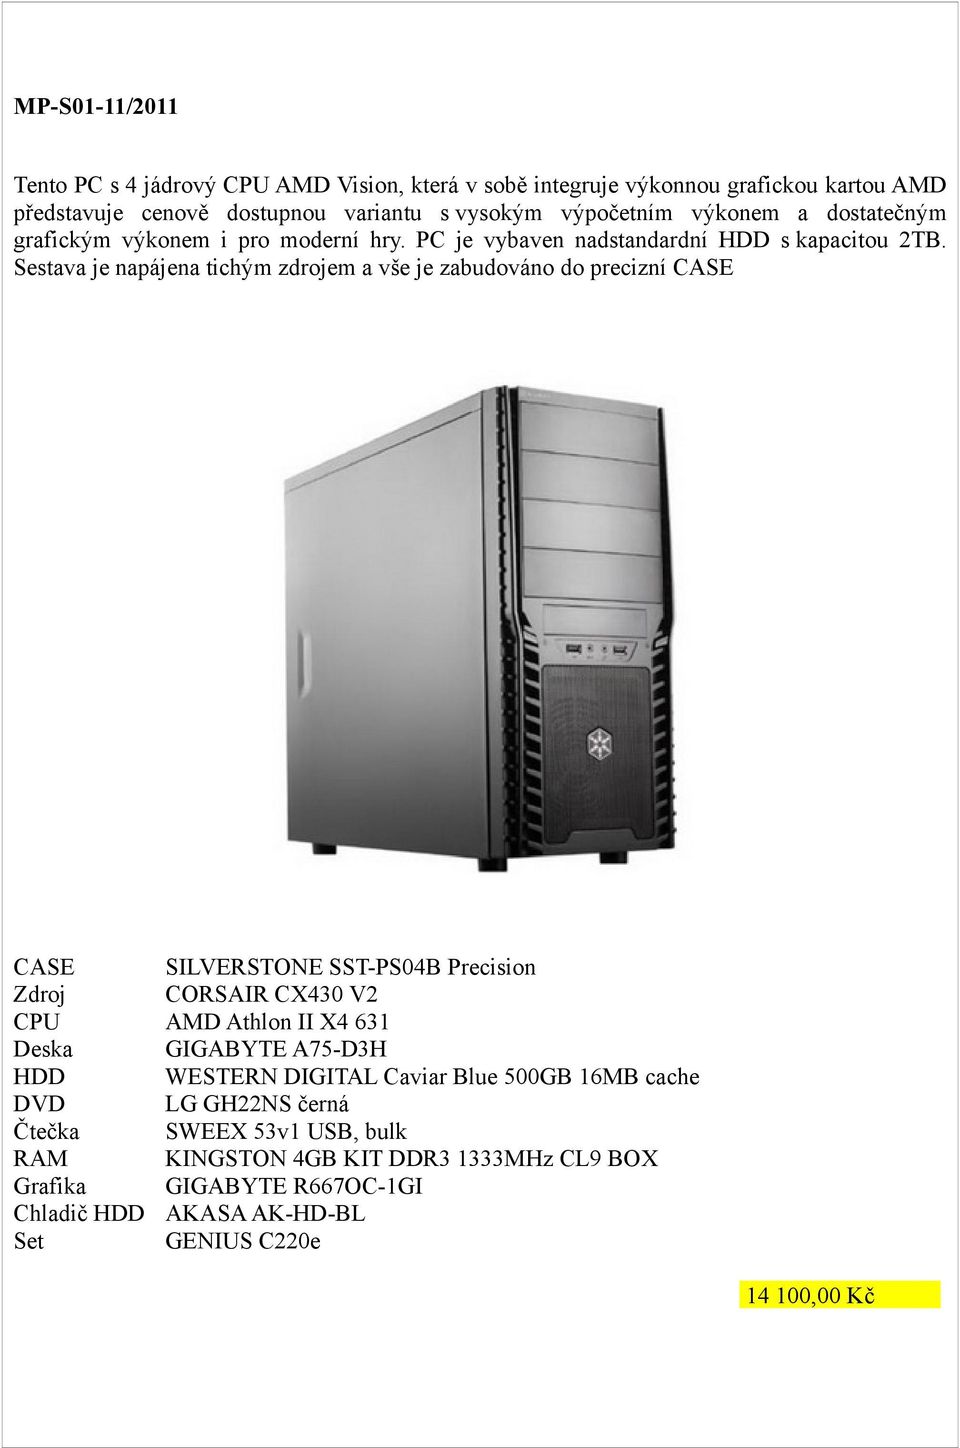 Sestava je napájena tichým zdrojem a vše je zabudováno do precizní CASE CASE SILVERSTONE SST-PS04B Precision Zdroj CORSAIR CX430 V2 CPU AMD Athlon II X4 631 Deska